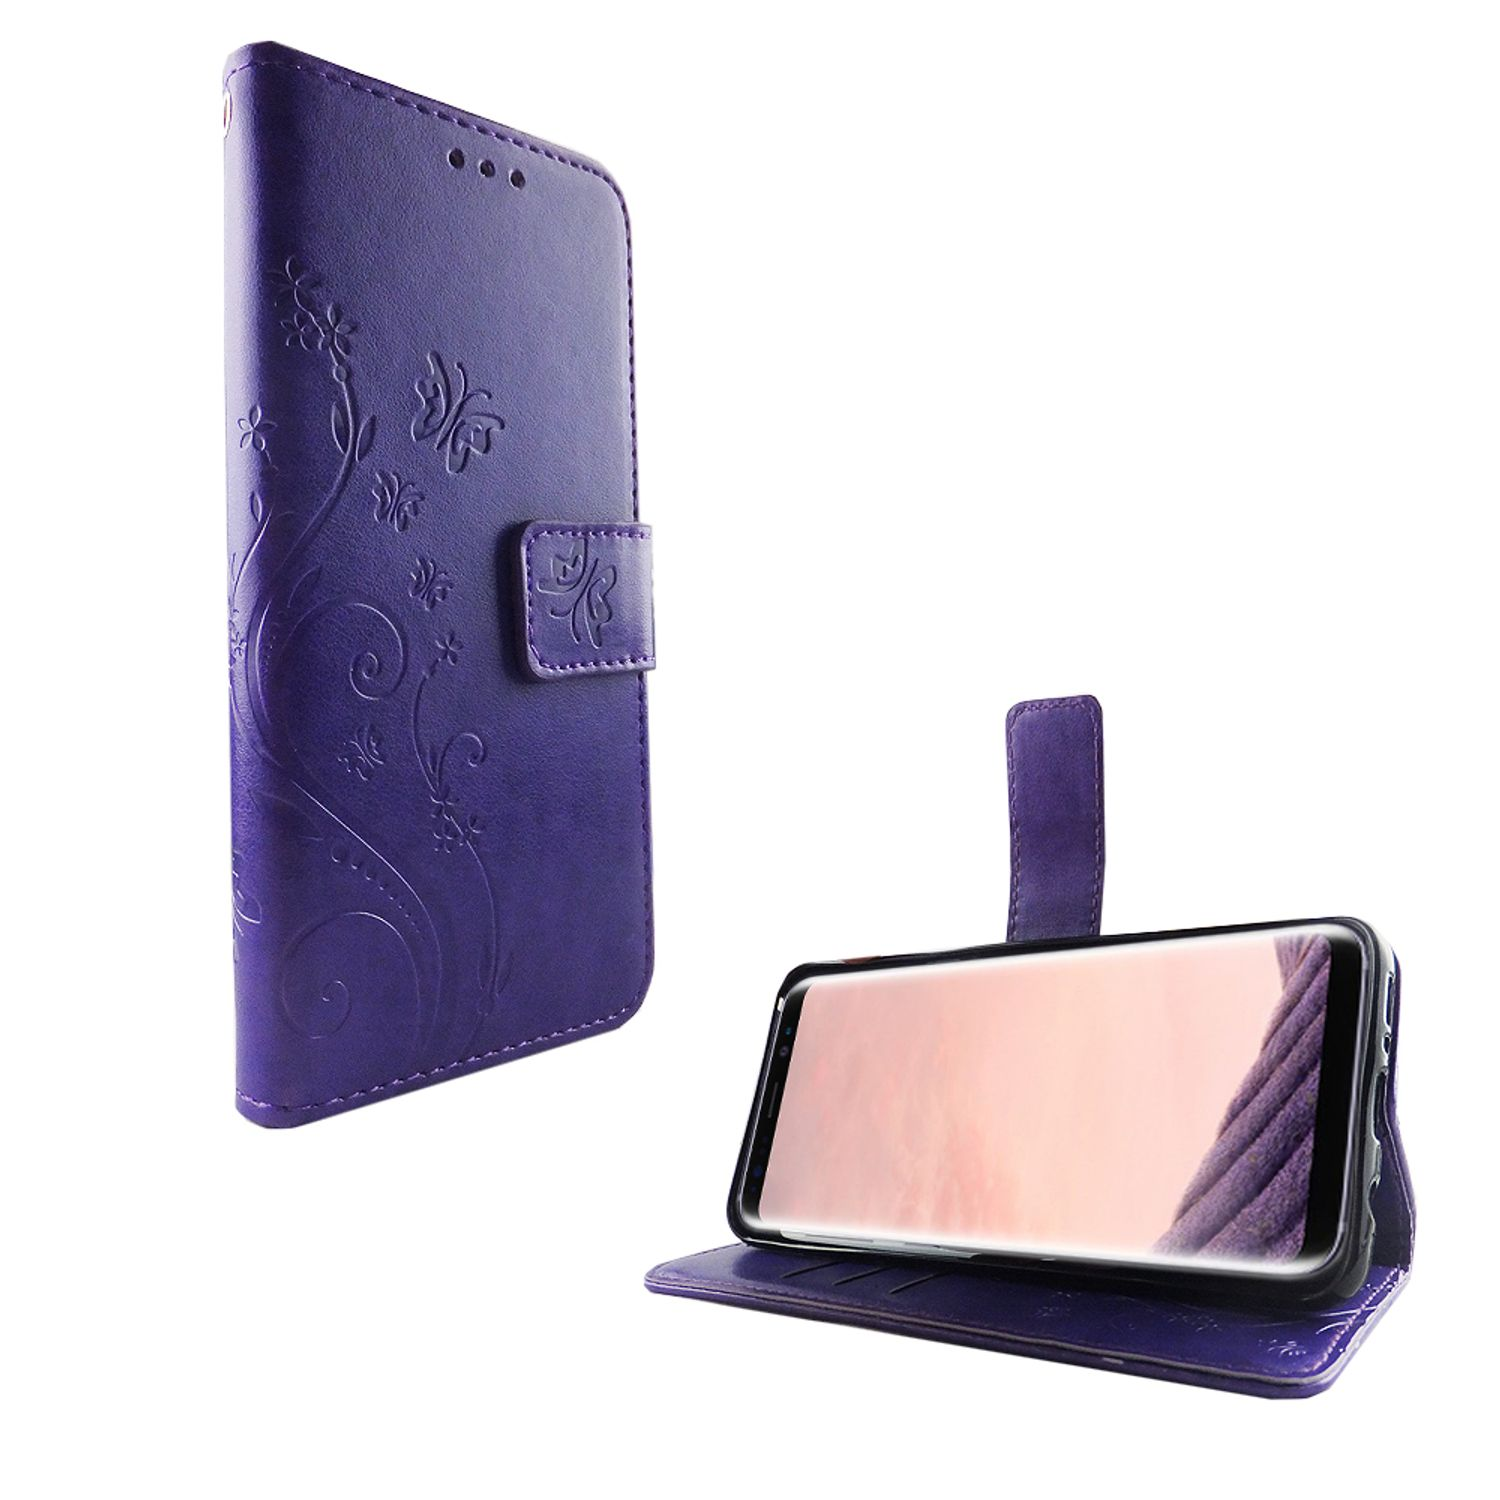 Samsung, Violett S8, KÖNIG DESIGN Galaxy Schutzhülle, Bookcover,